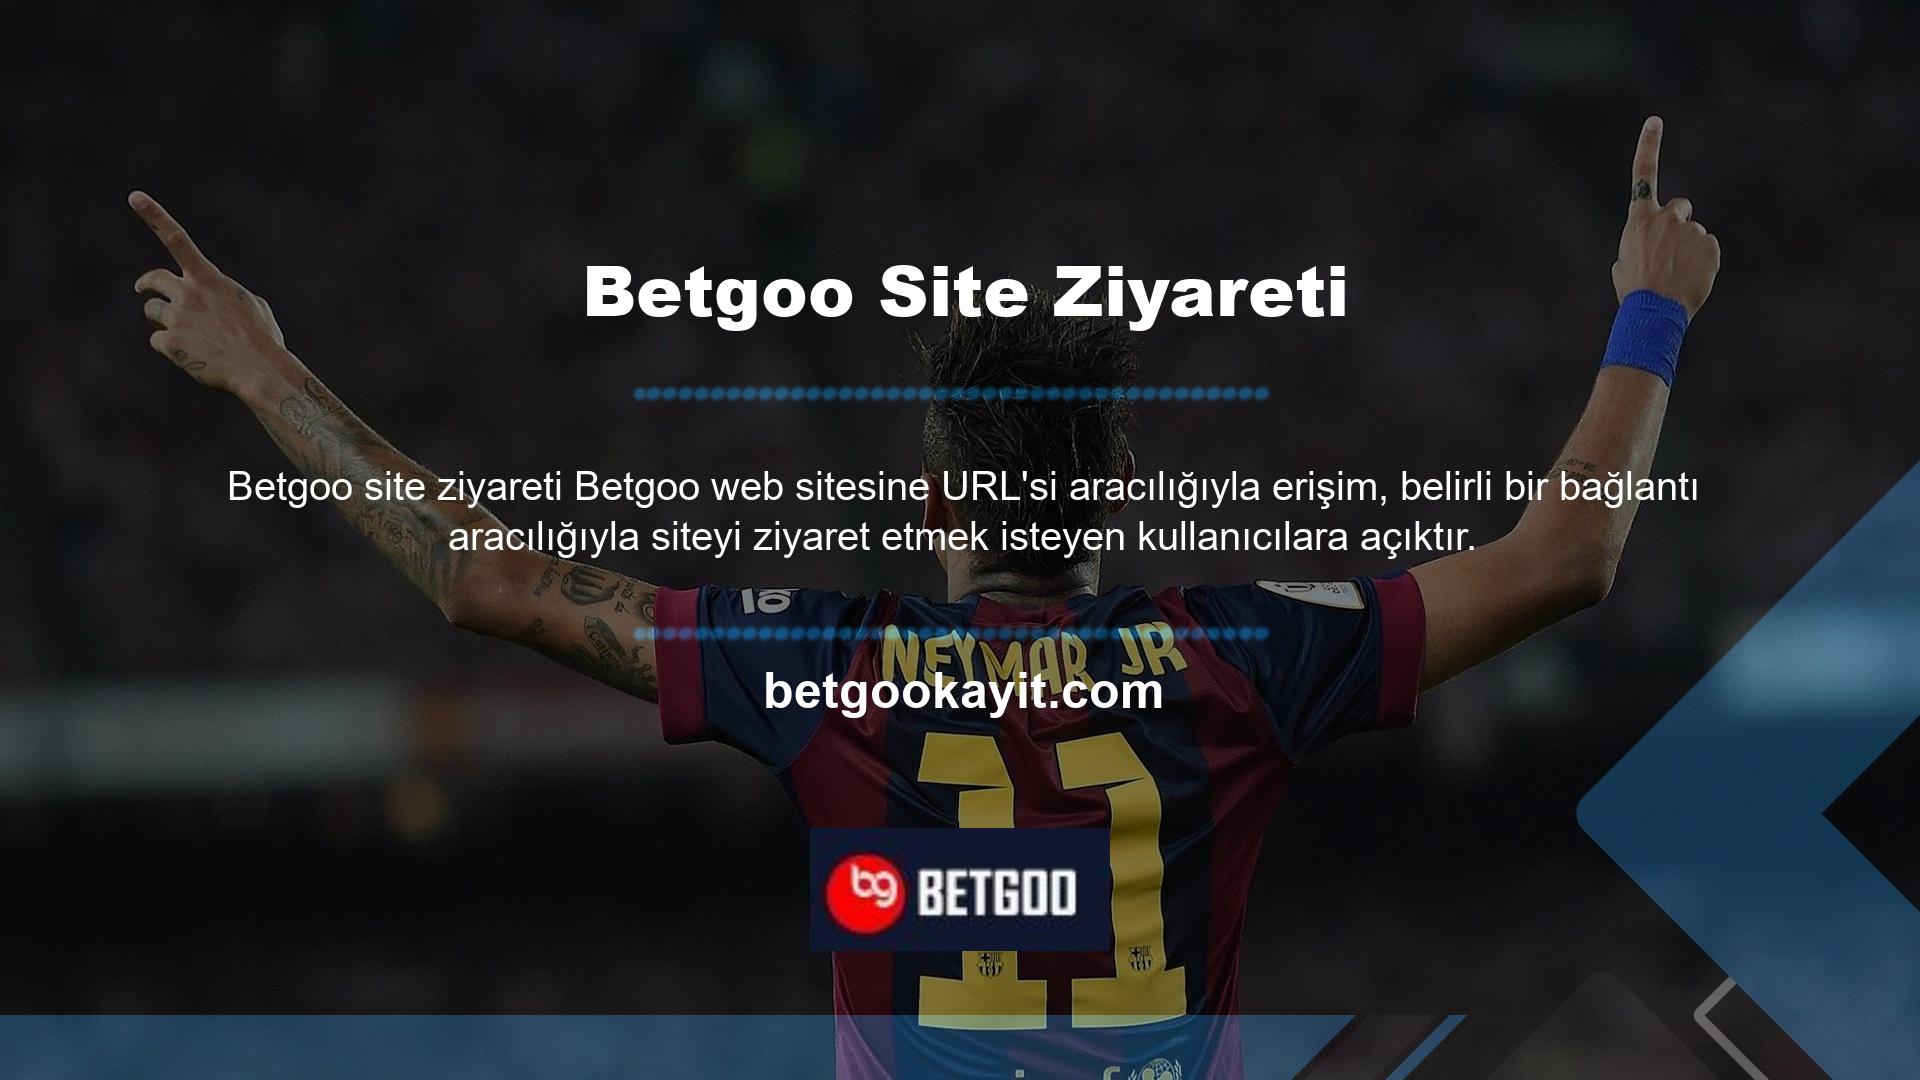 Beinsports 1 gibi Türkiye Premier Ligi kanalları, canlı bahis ve seyircili maçlara ücretsiz erişim imkanı sunuyor